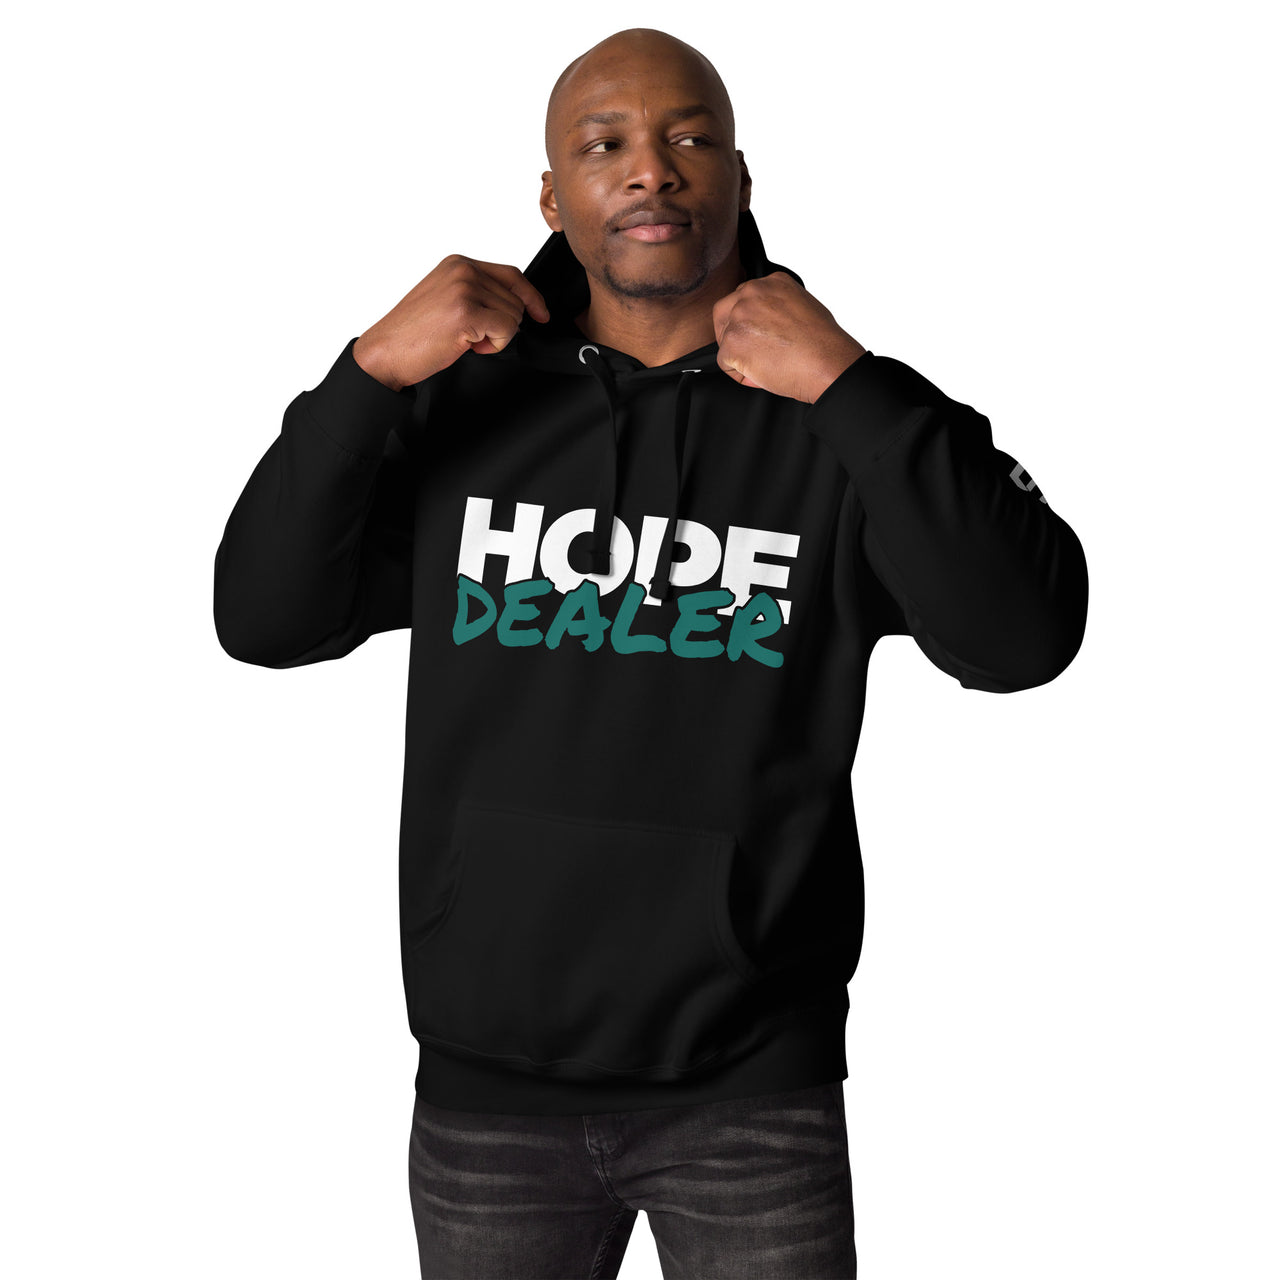 Hope Dealer Unisex Hoodie